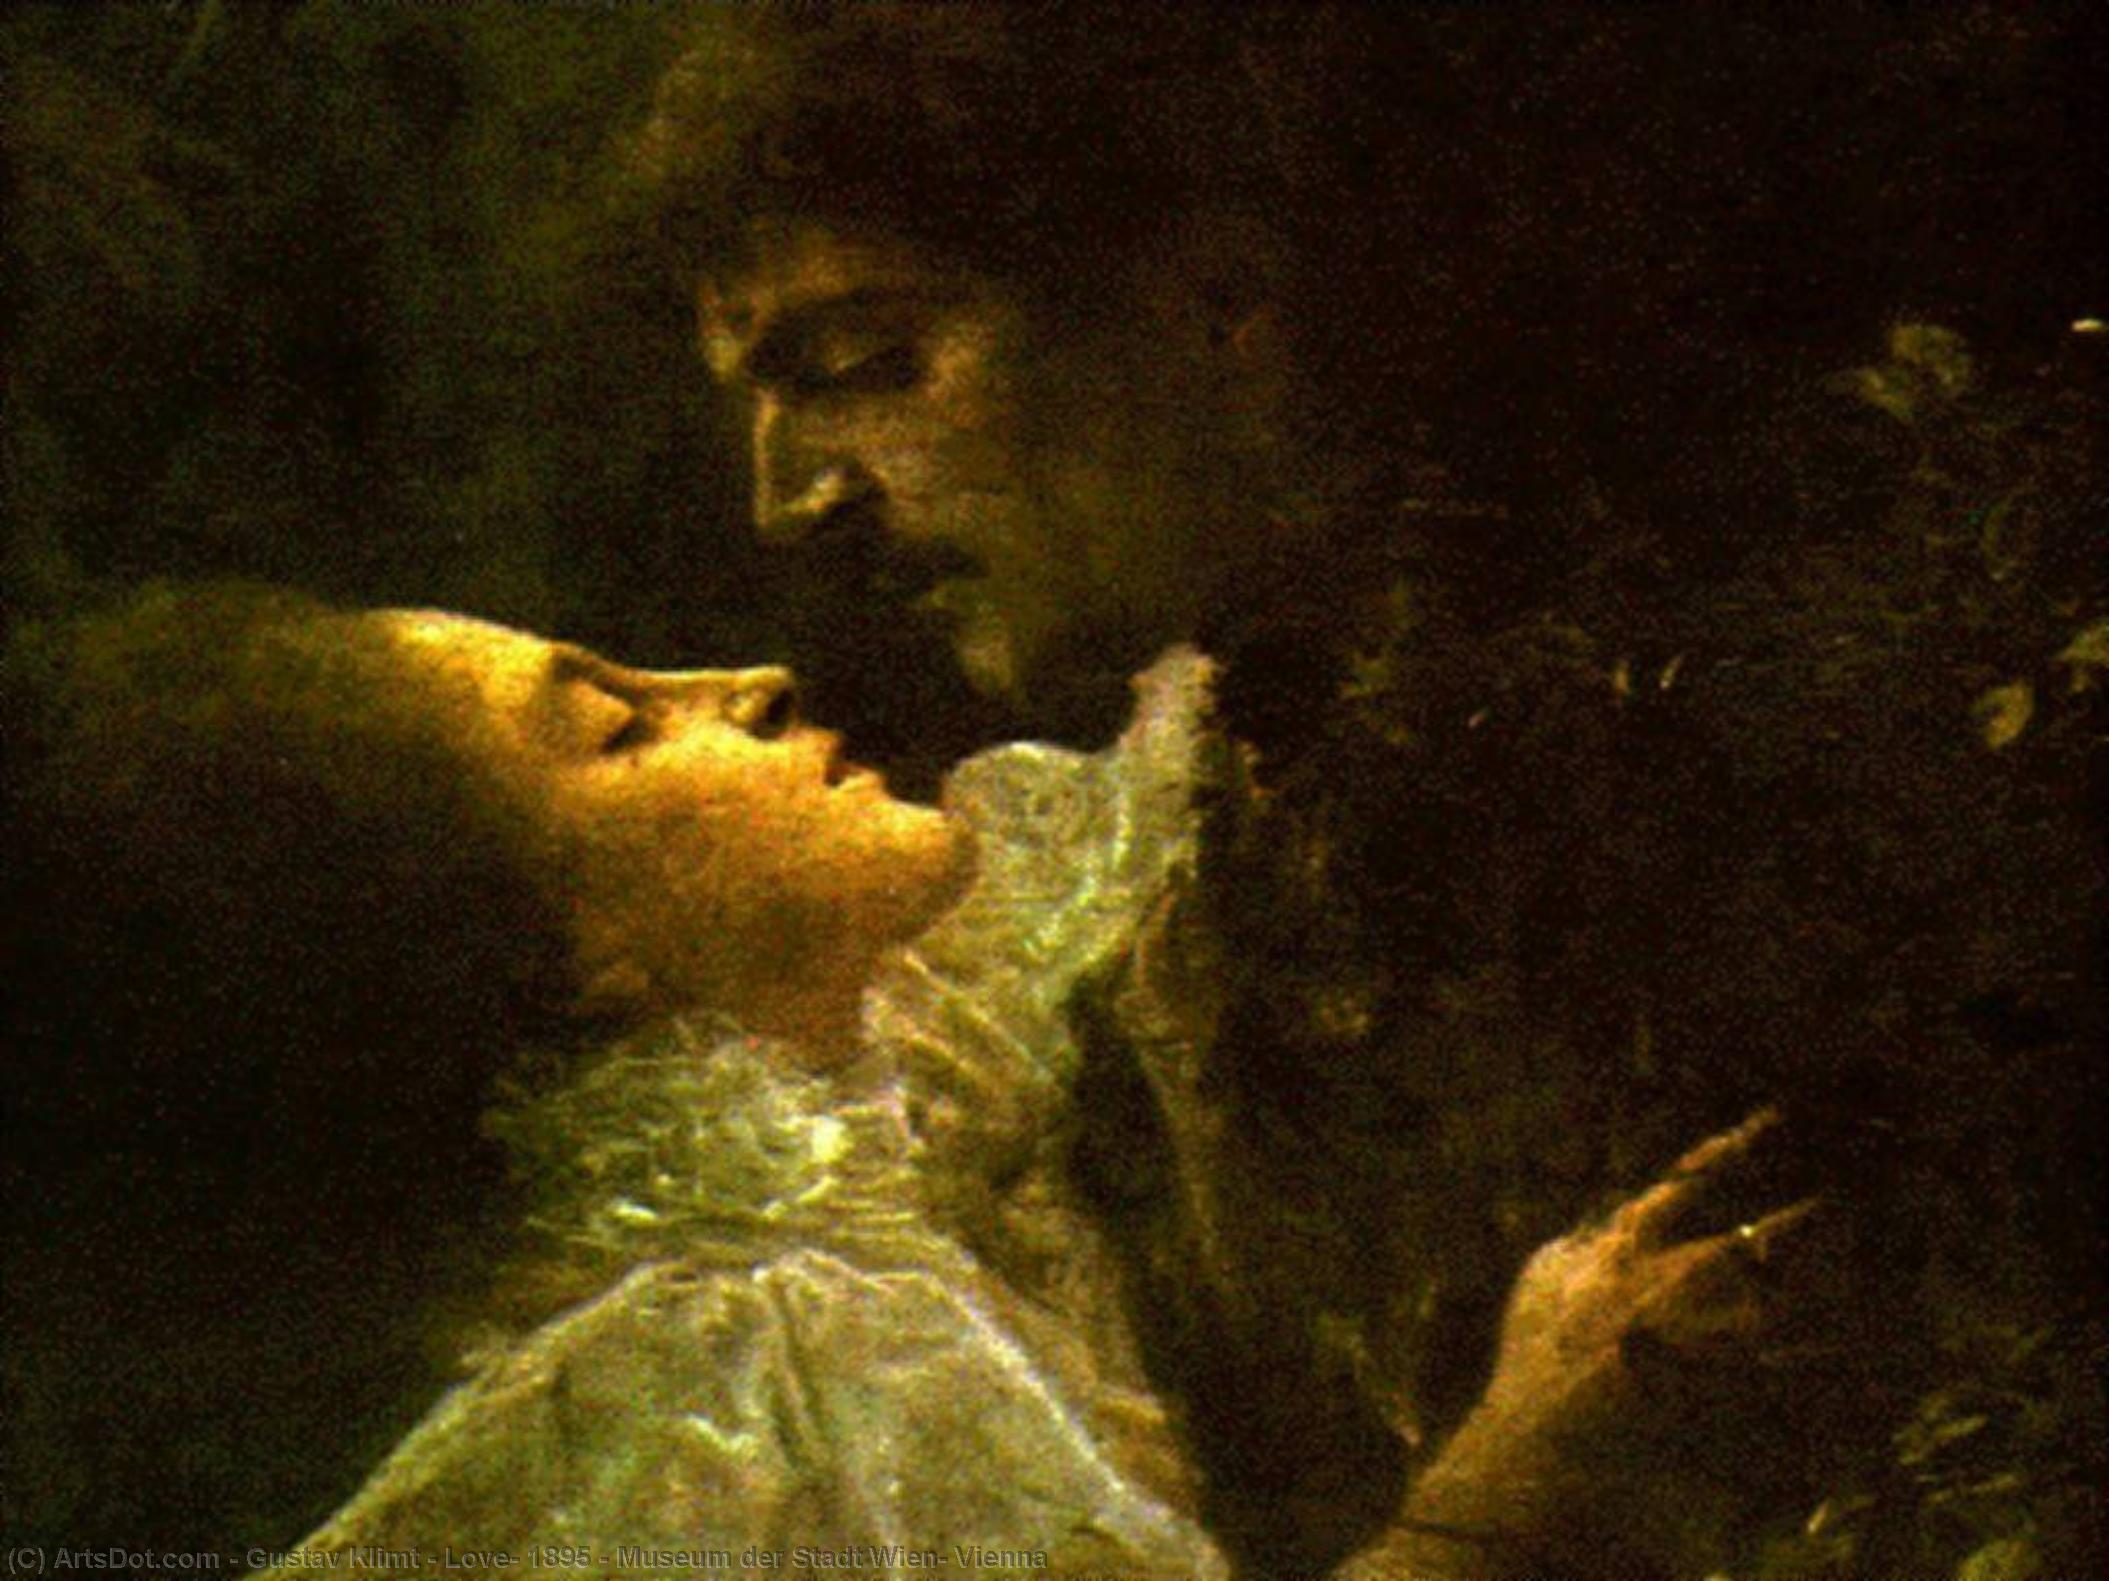 WikiOO.org - Encyclopedia of Fine Arts - Maalaus, taideteos Gustav Klimt - Love, 1895 - Museum der Stadt Wien, Vienna